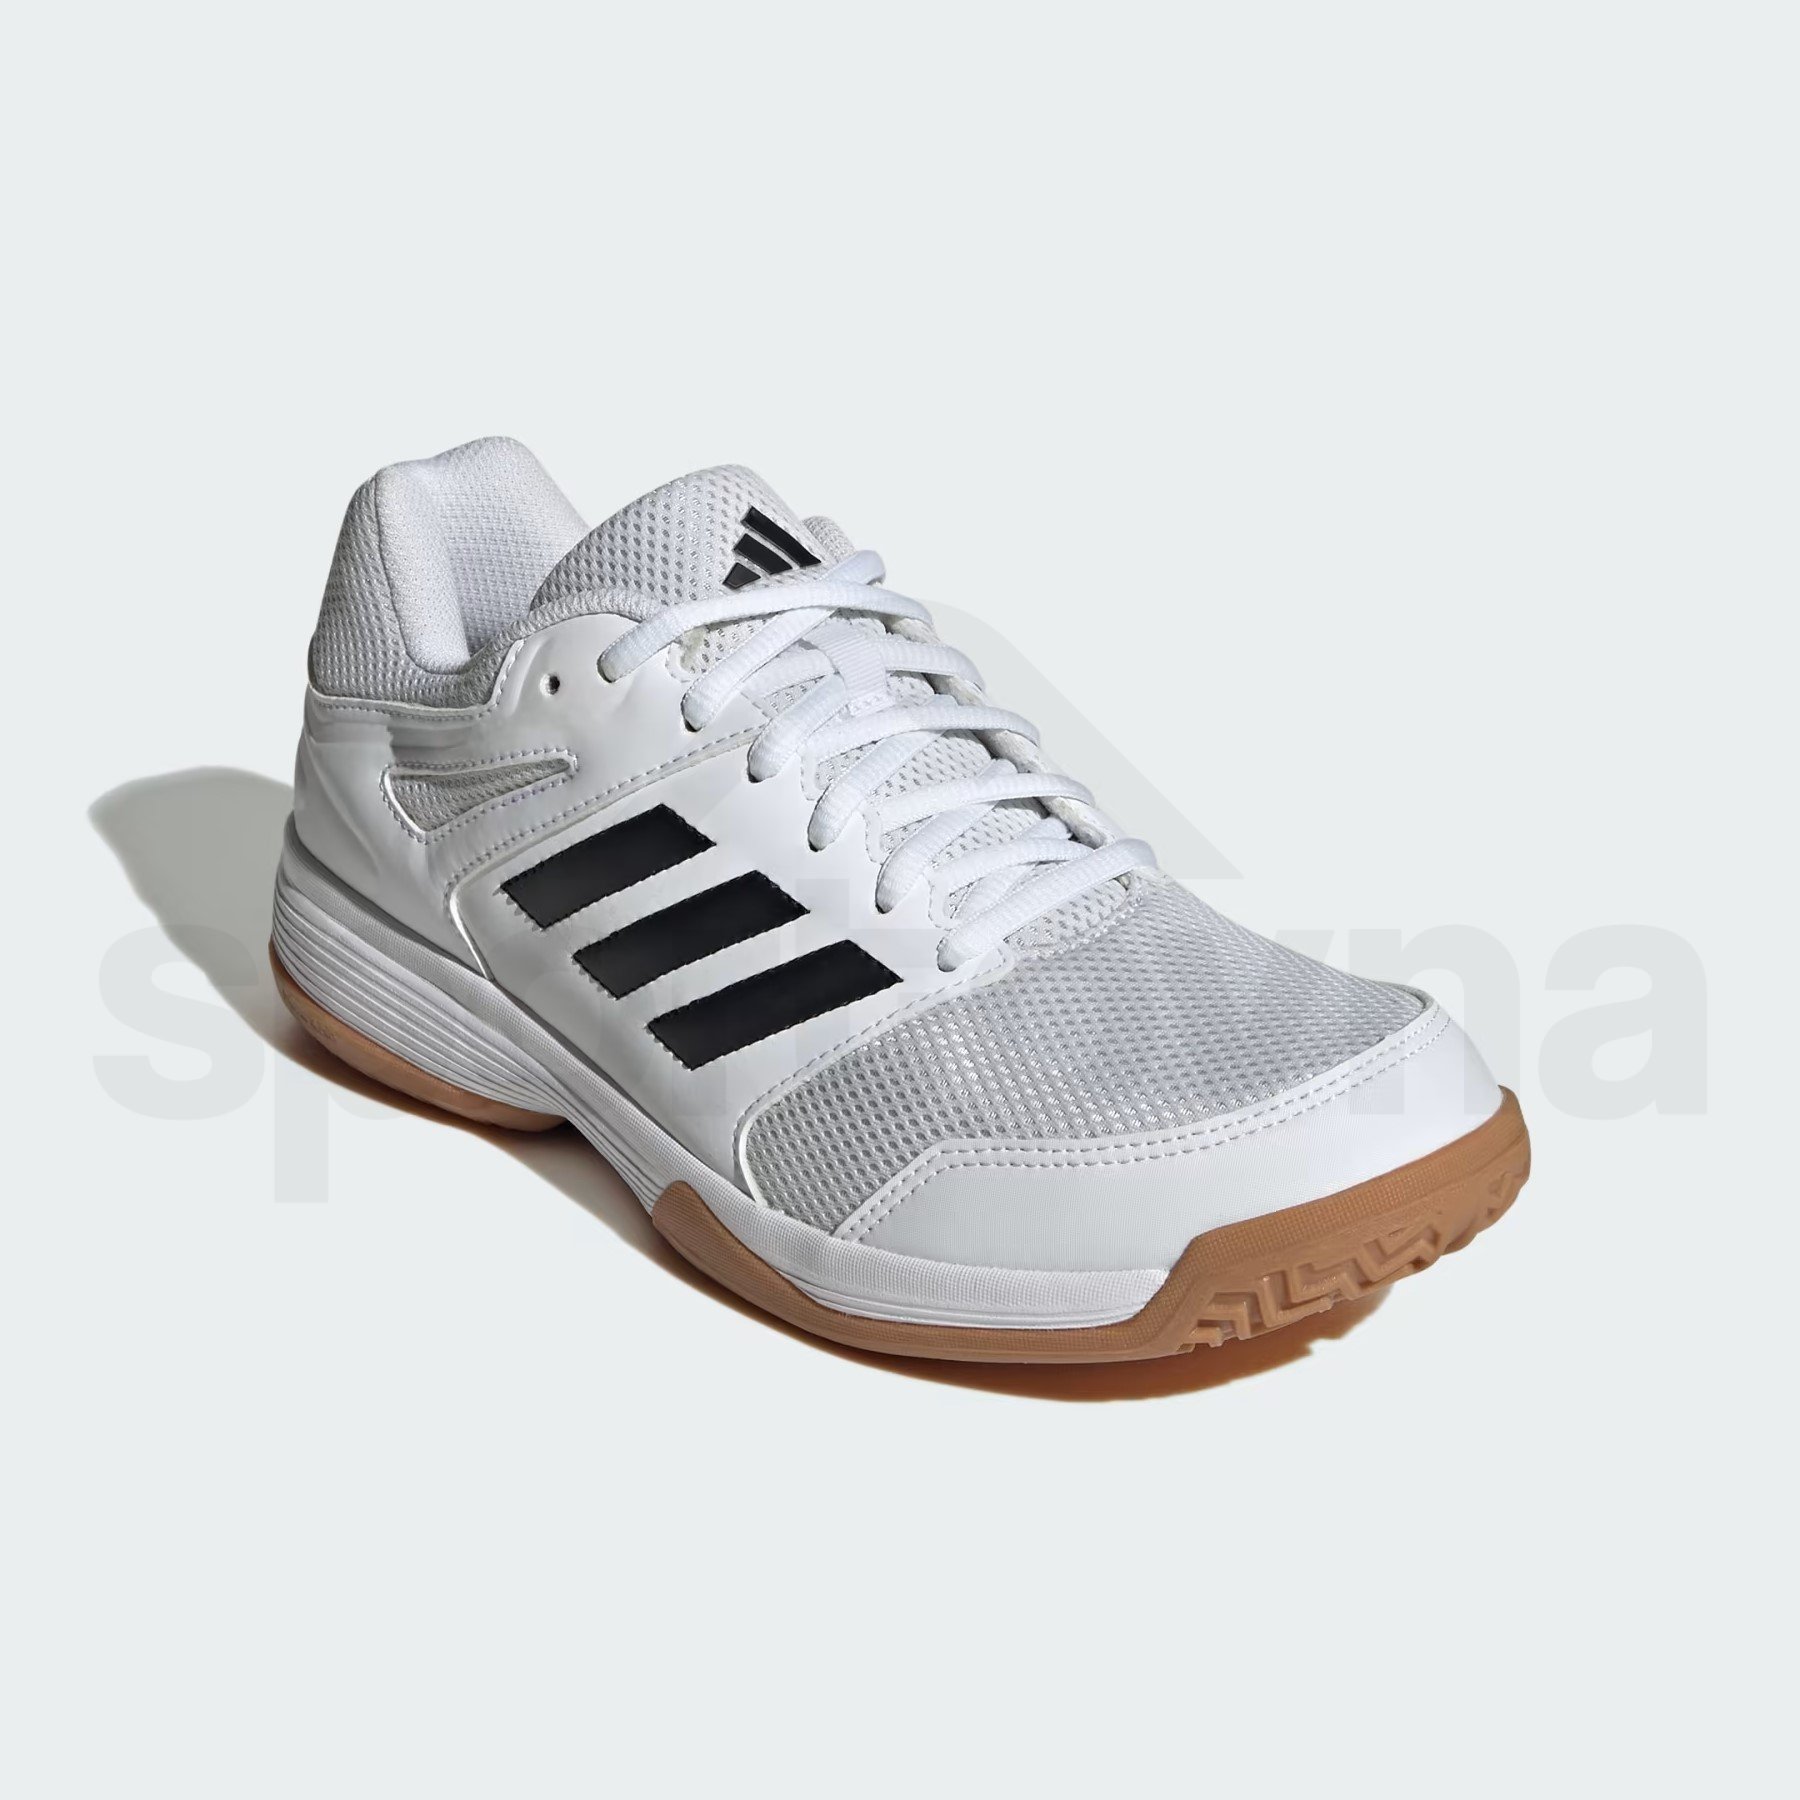 Obuv Adidas Speedcourt W - bílá/černá/hnědá